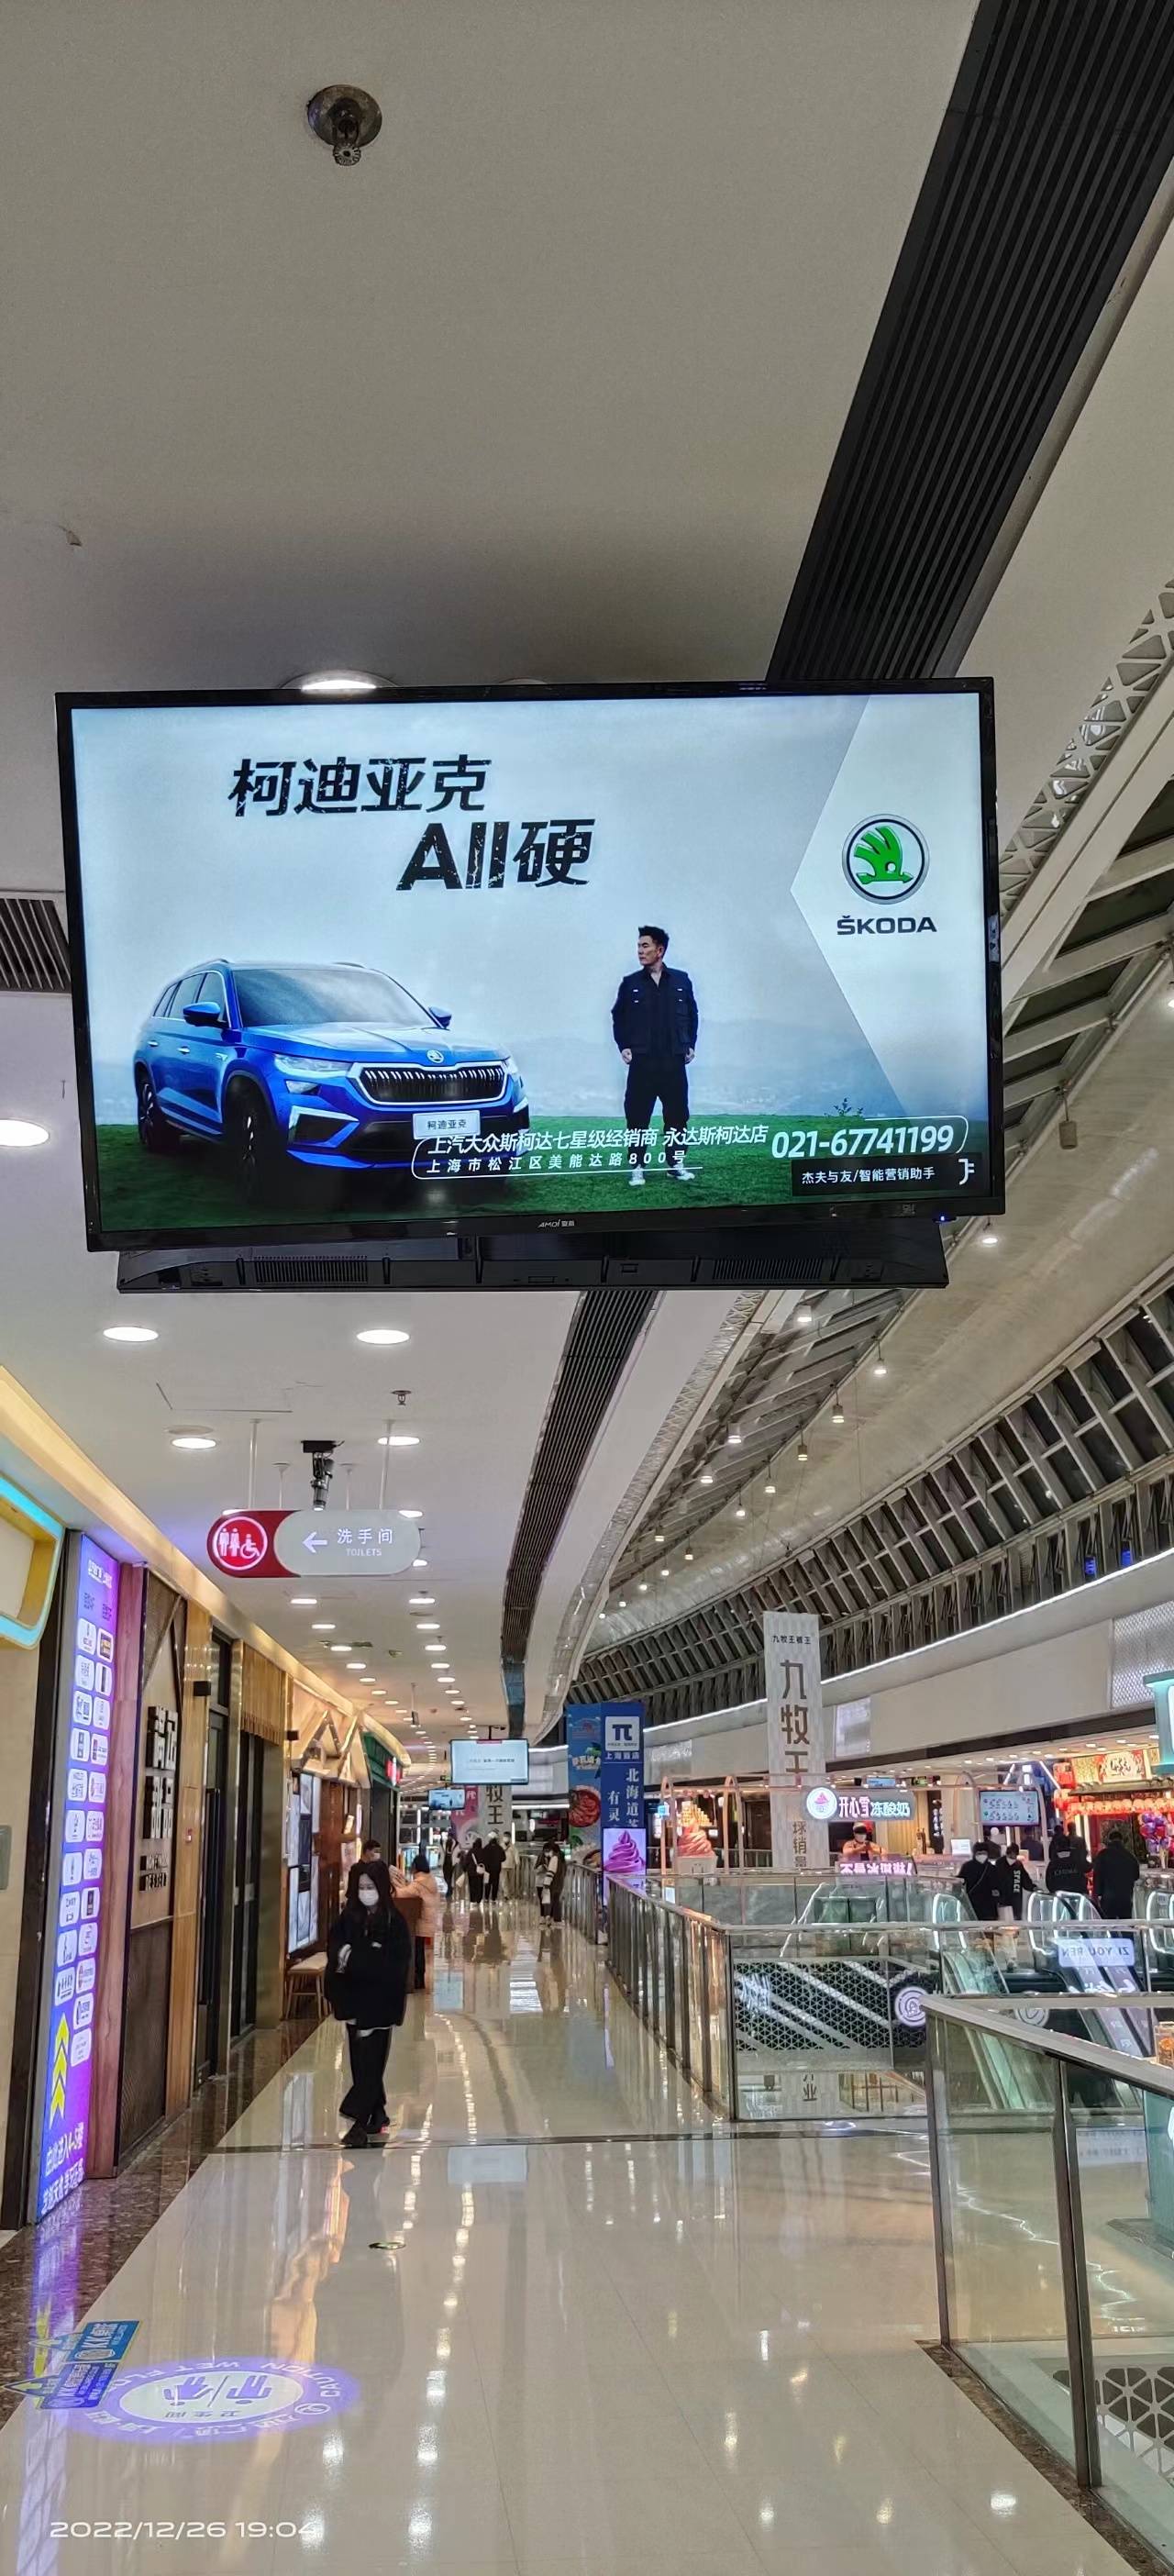 上海上海松江万达广场商超卖场内部广告机/电视机